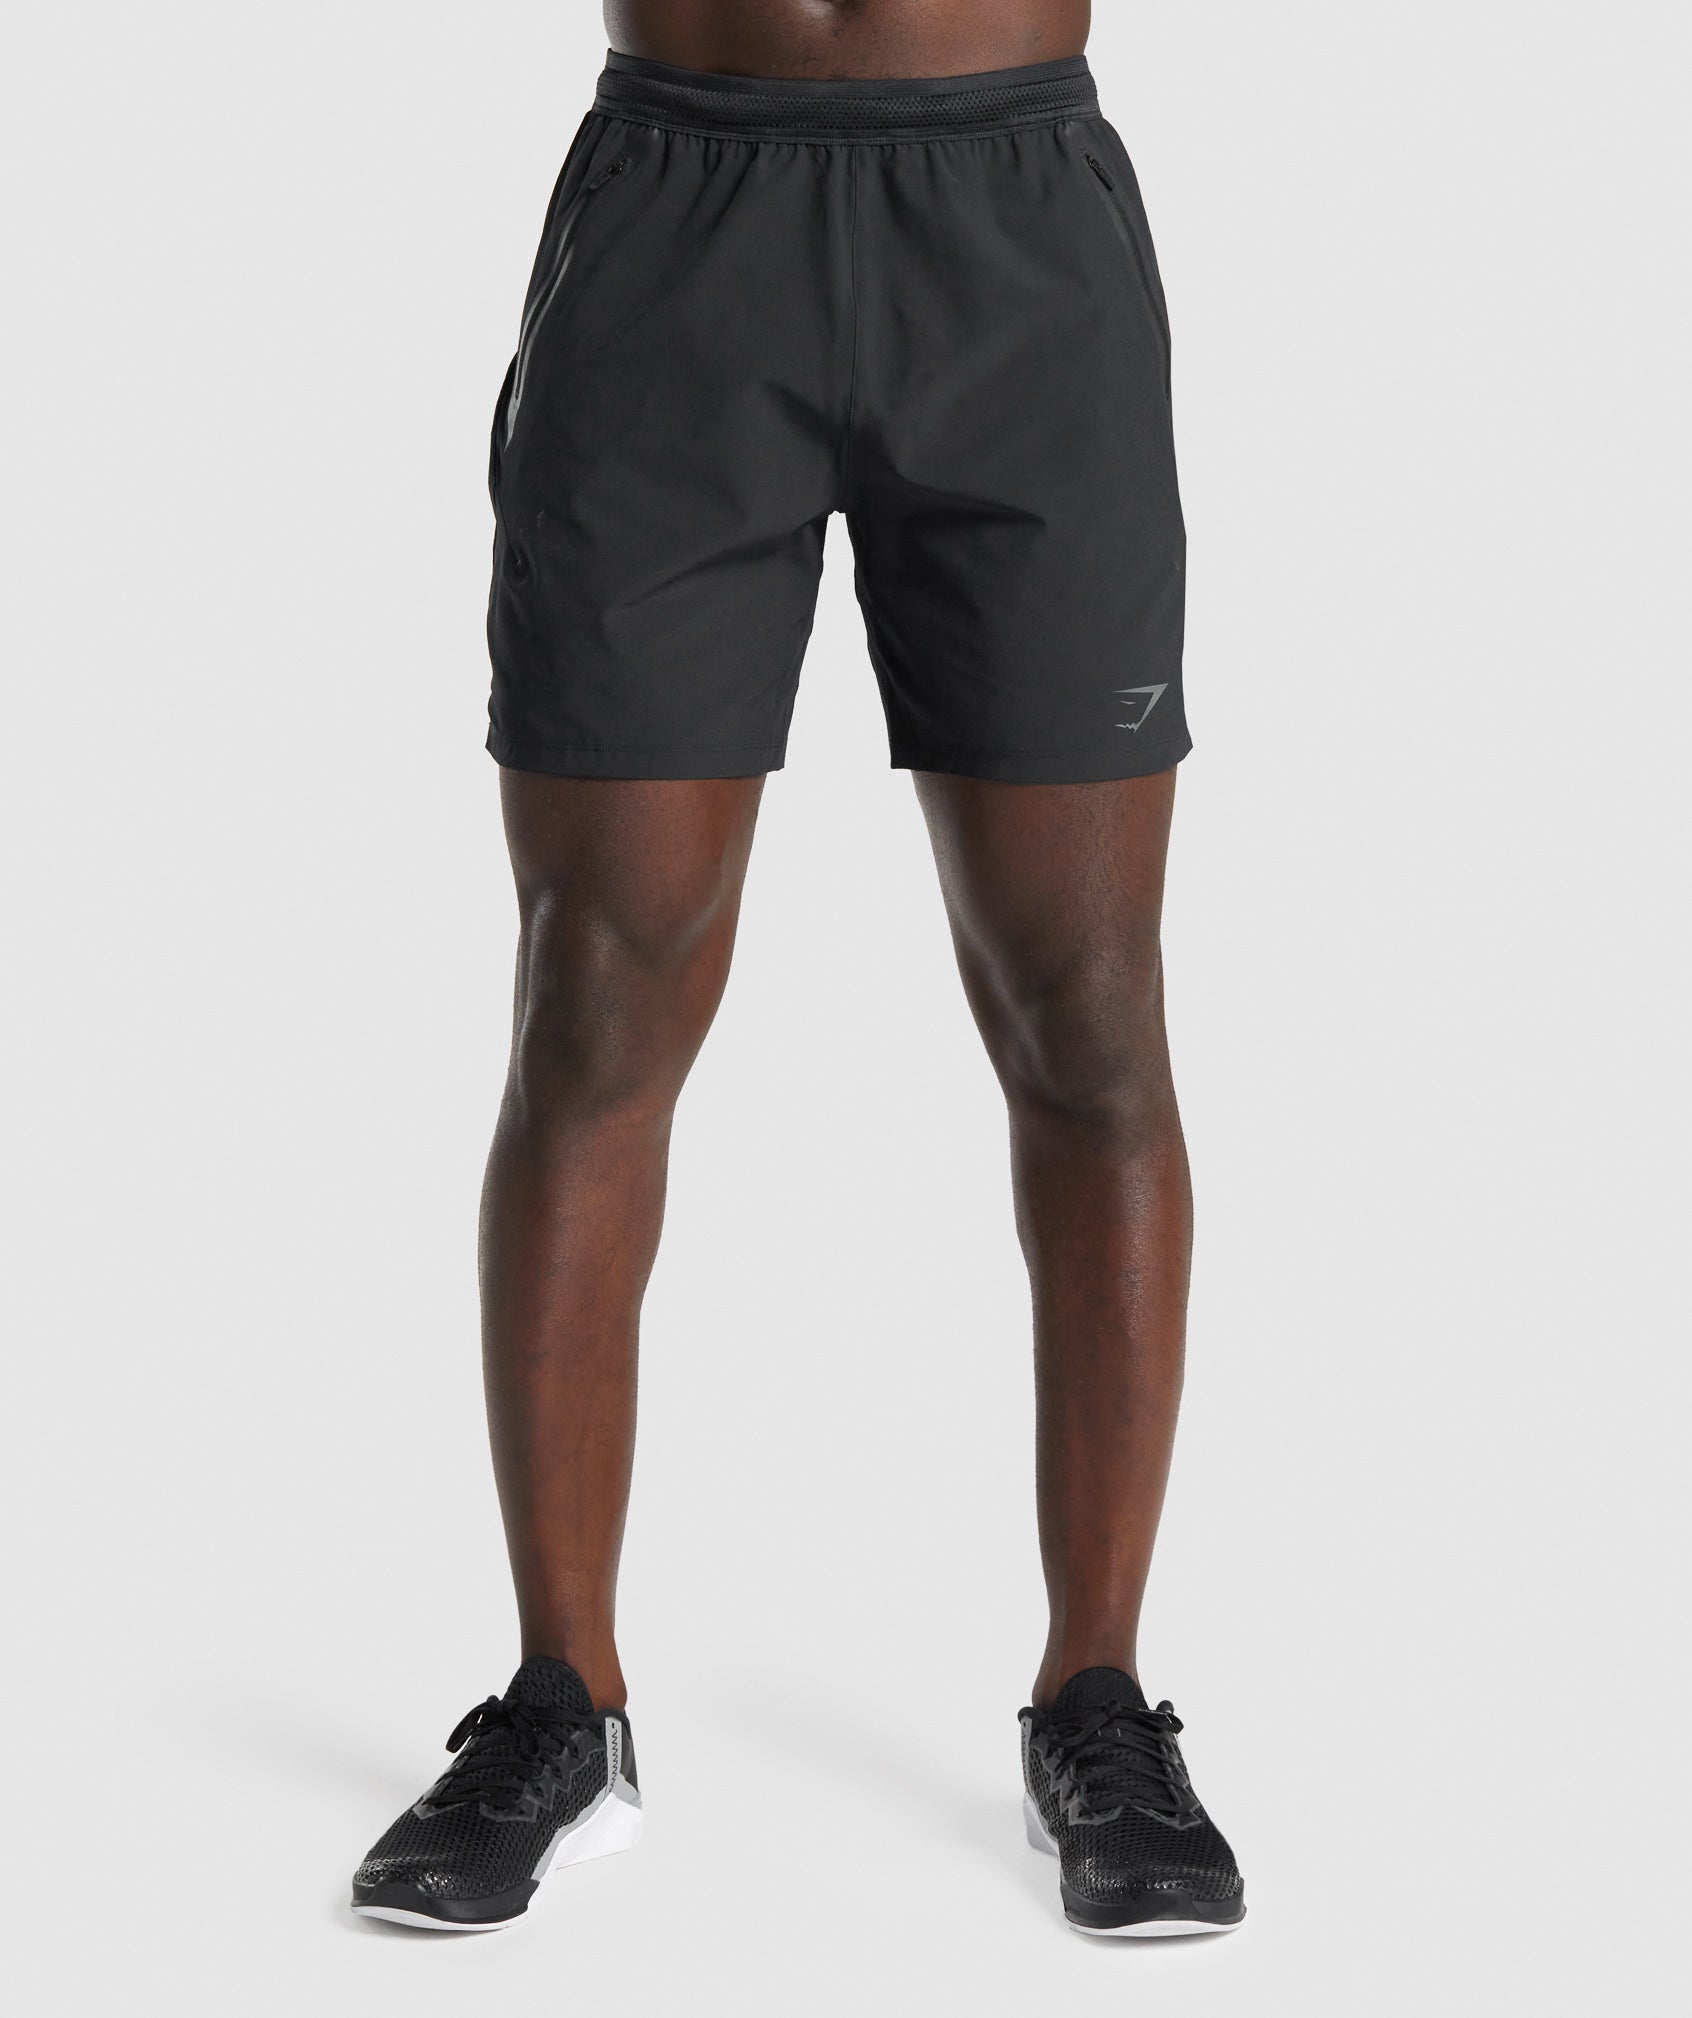 Gymshark Apex Run 4 Shorts - Black